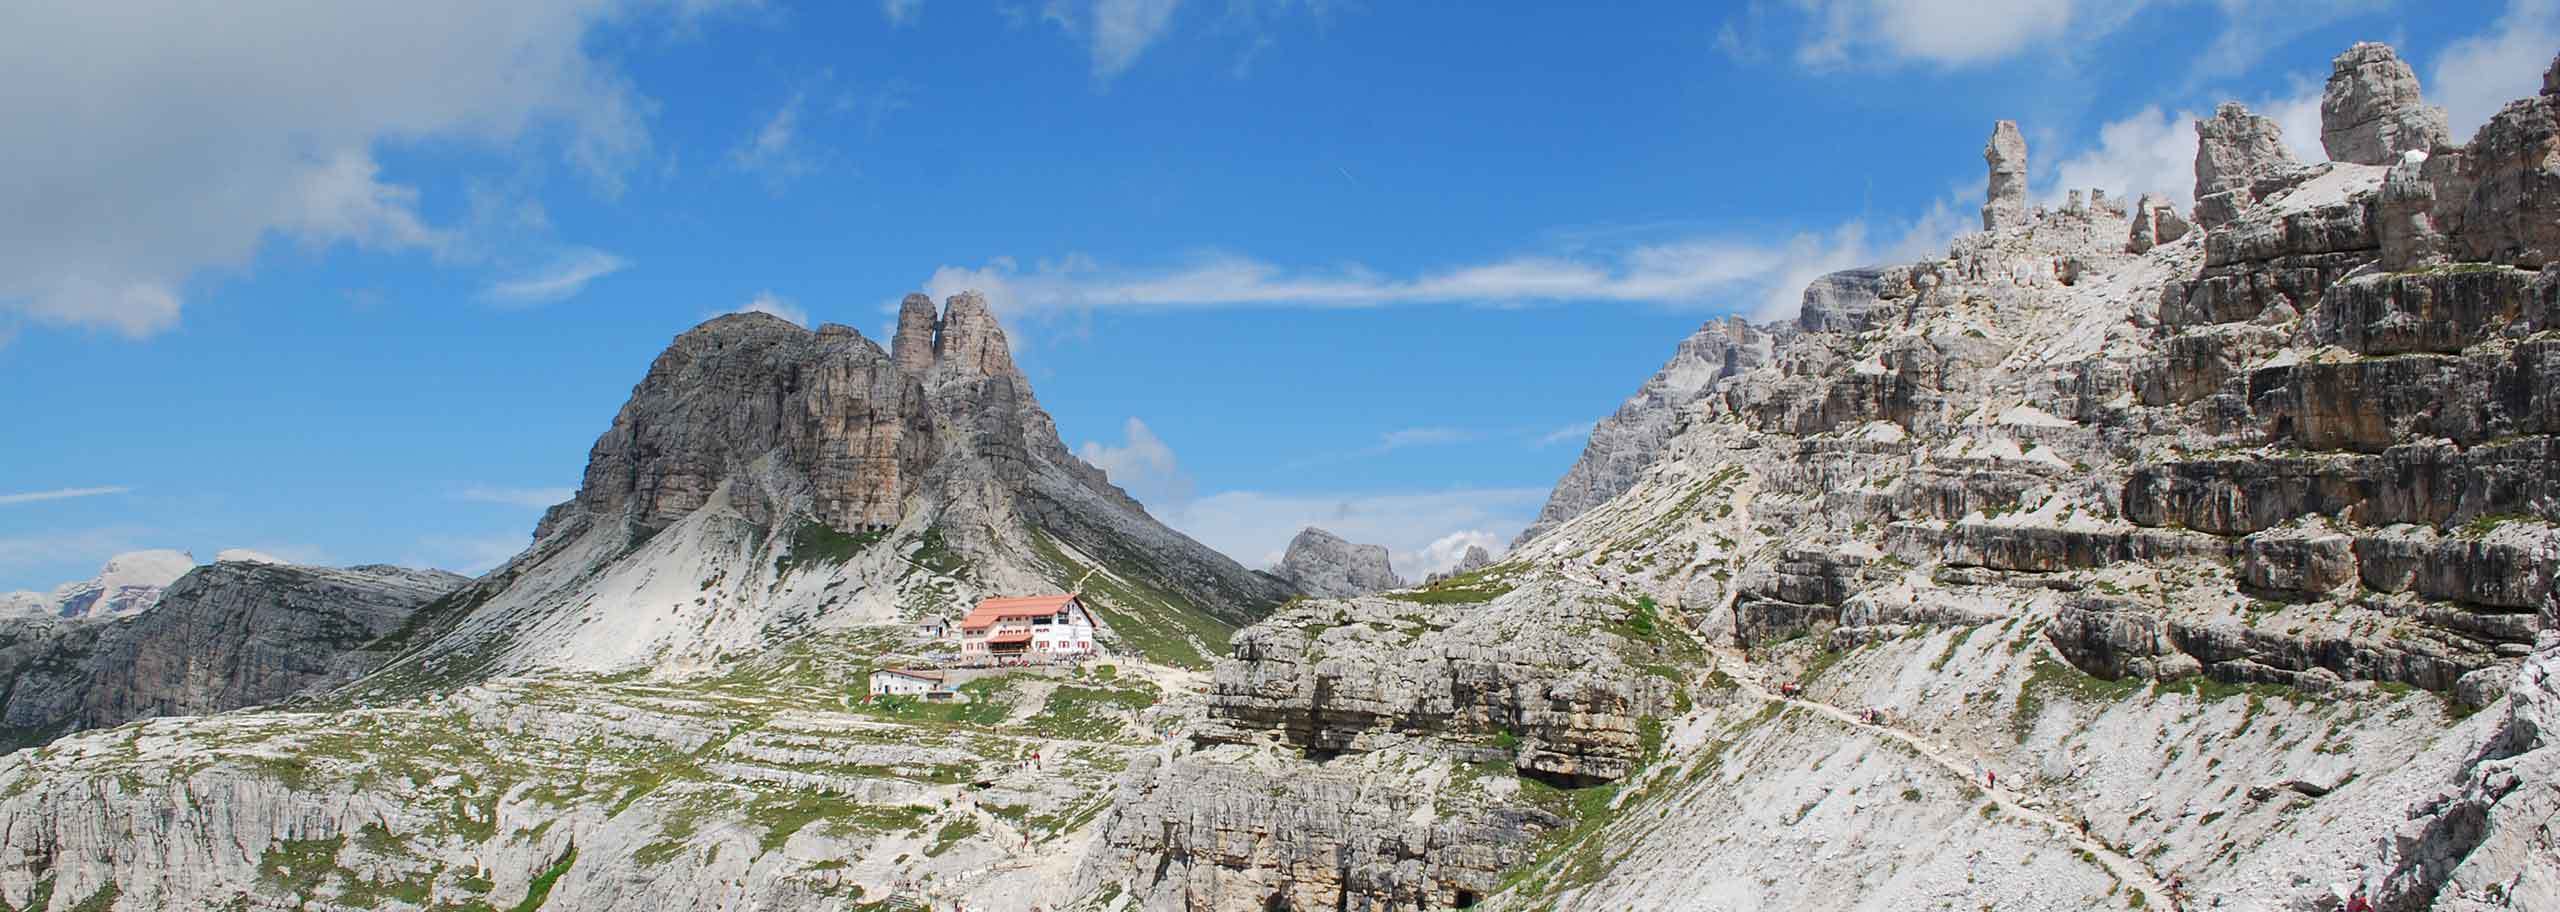 Escursioni in Val Pusteria, Trekking e Camminate con Guida Alpina